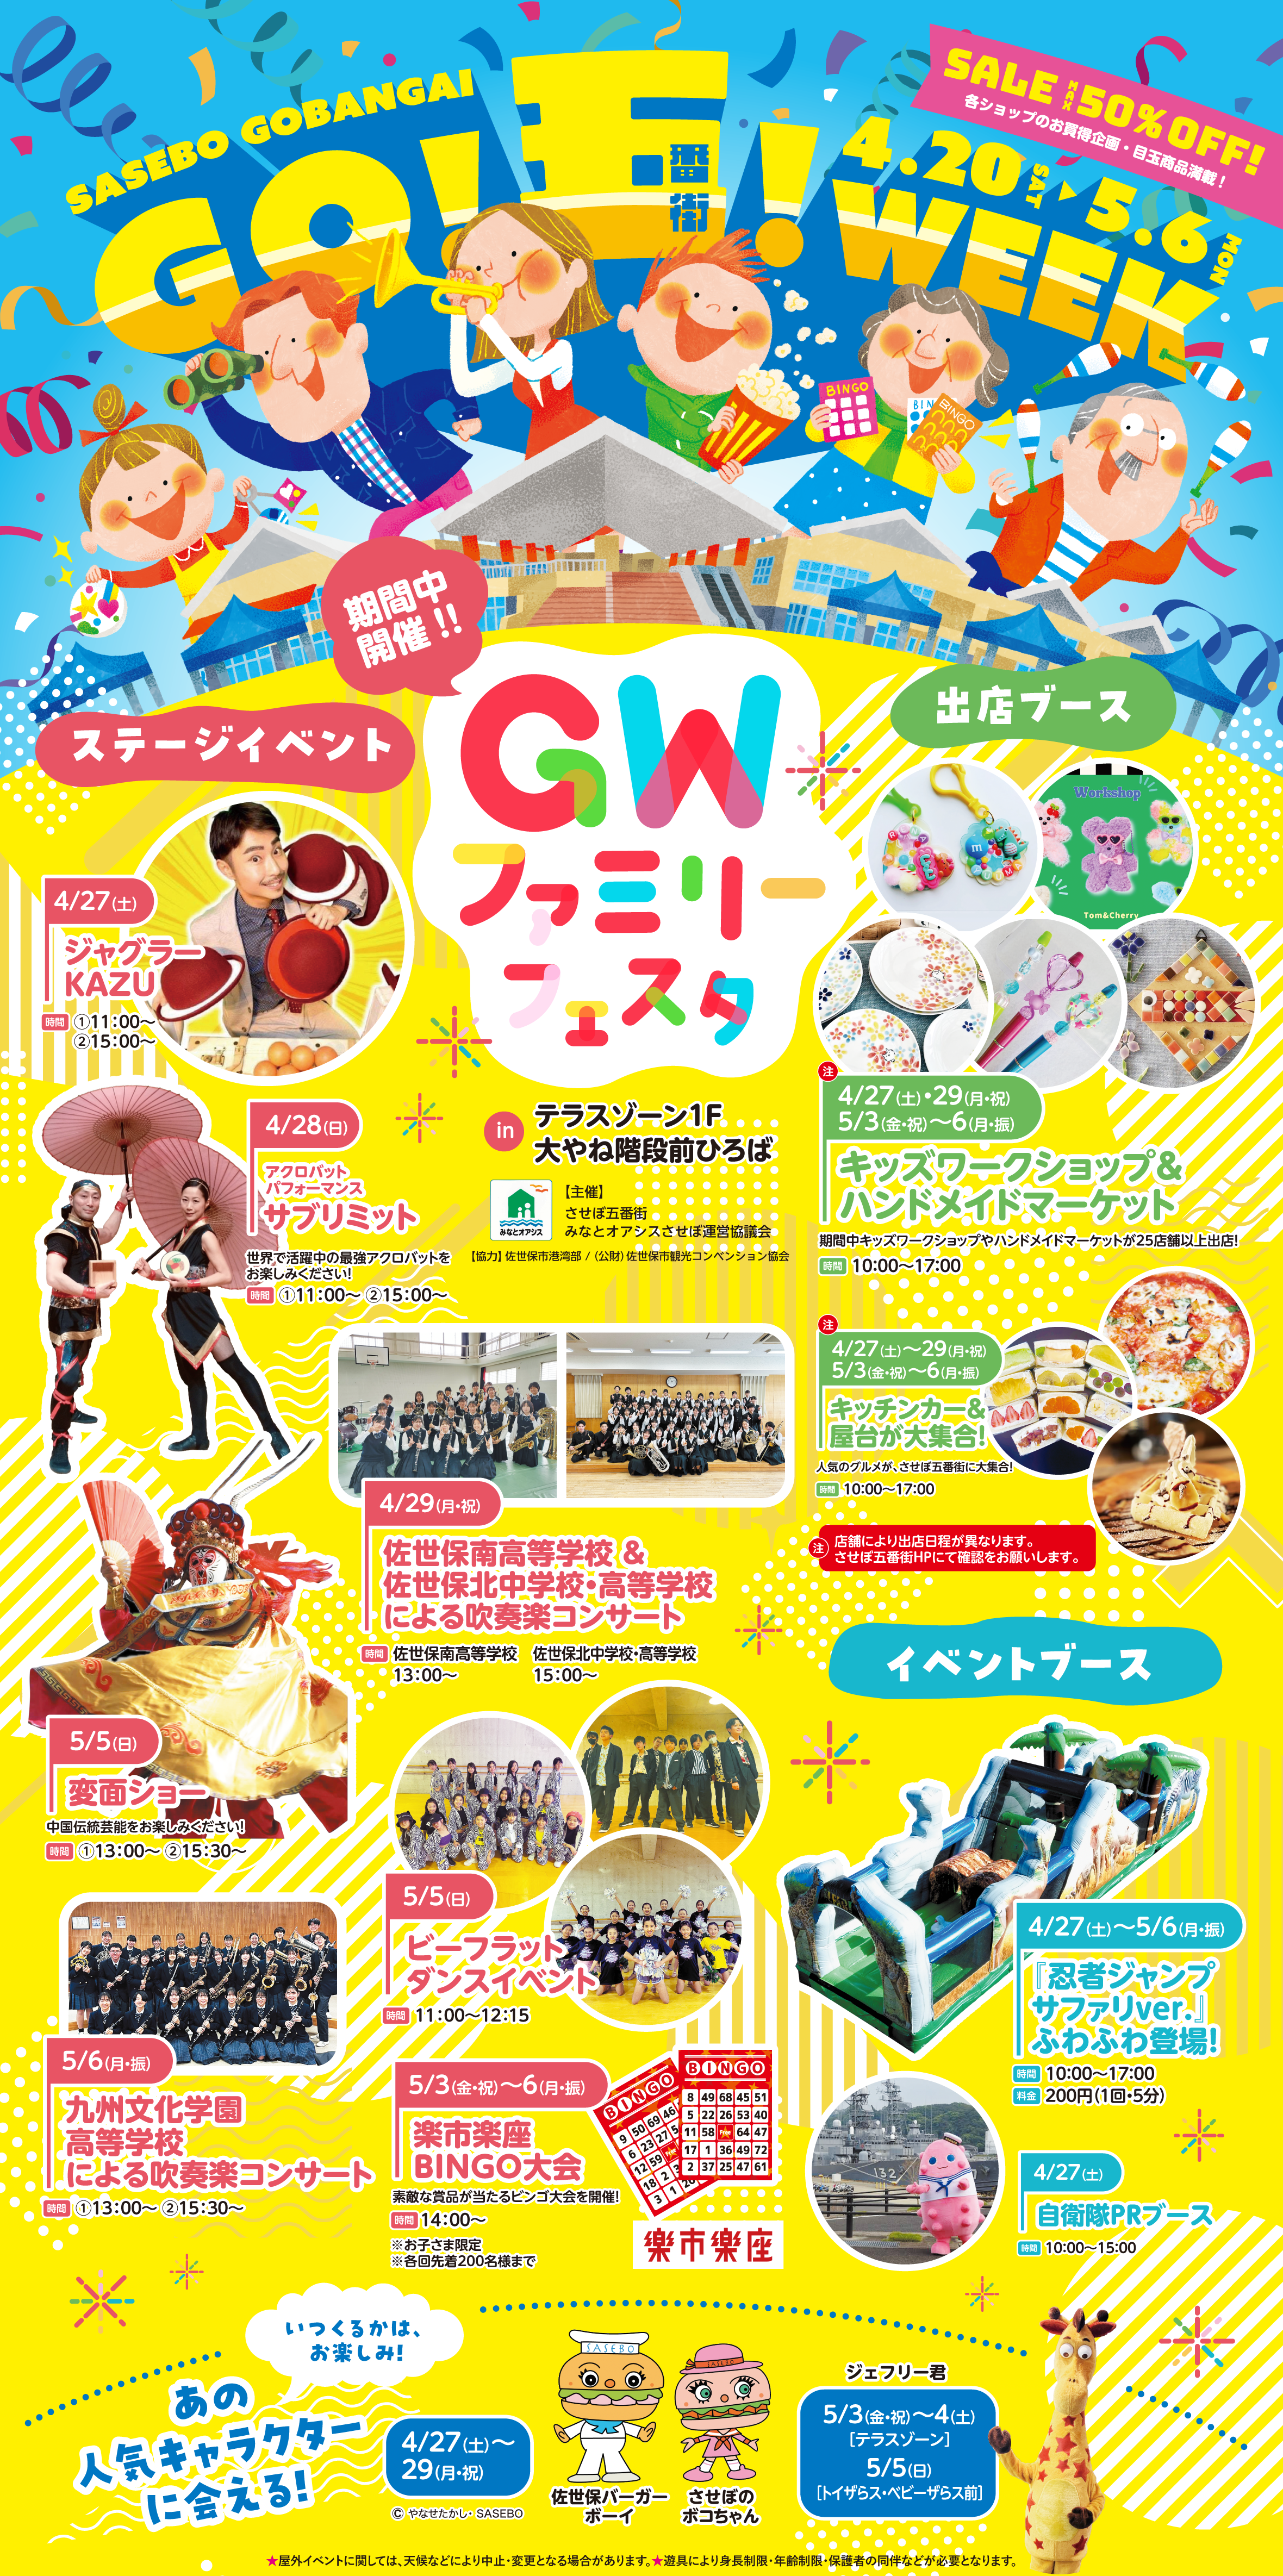 GO!五!WEEK! 4/20土）〜5/6（月）GWファミリーフェスタ